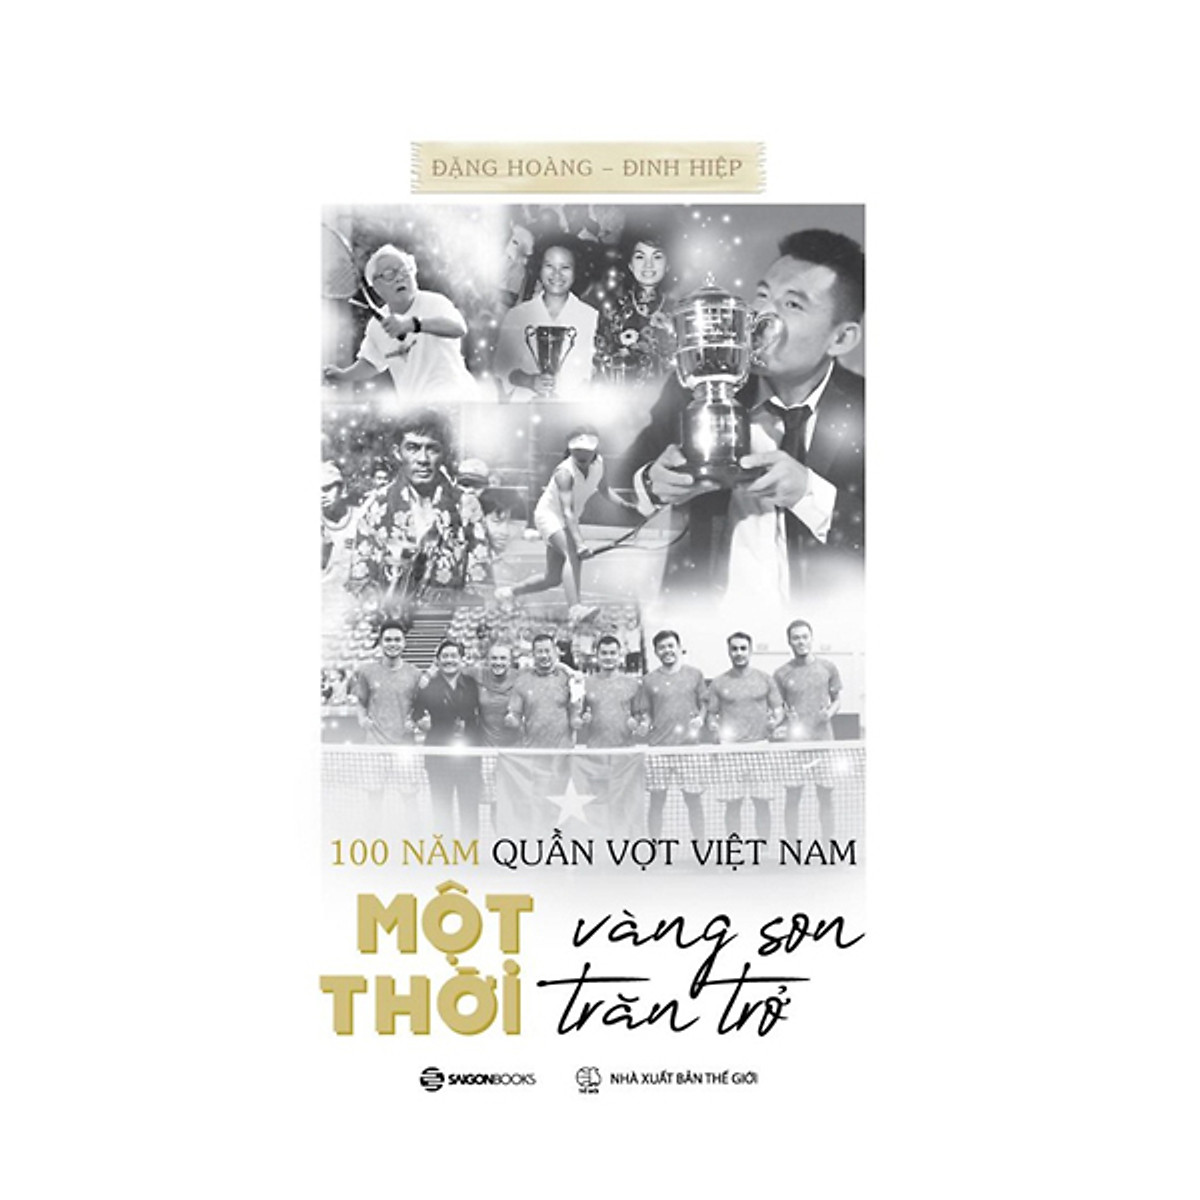 100 Năm Quần Vợt Việt Nam: Một Thời Vàng Son, Một Thời Trăn Trở - Bộ Sách Chữ & Ảnh PDF